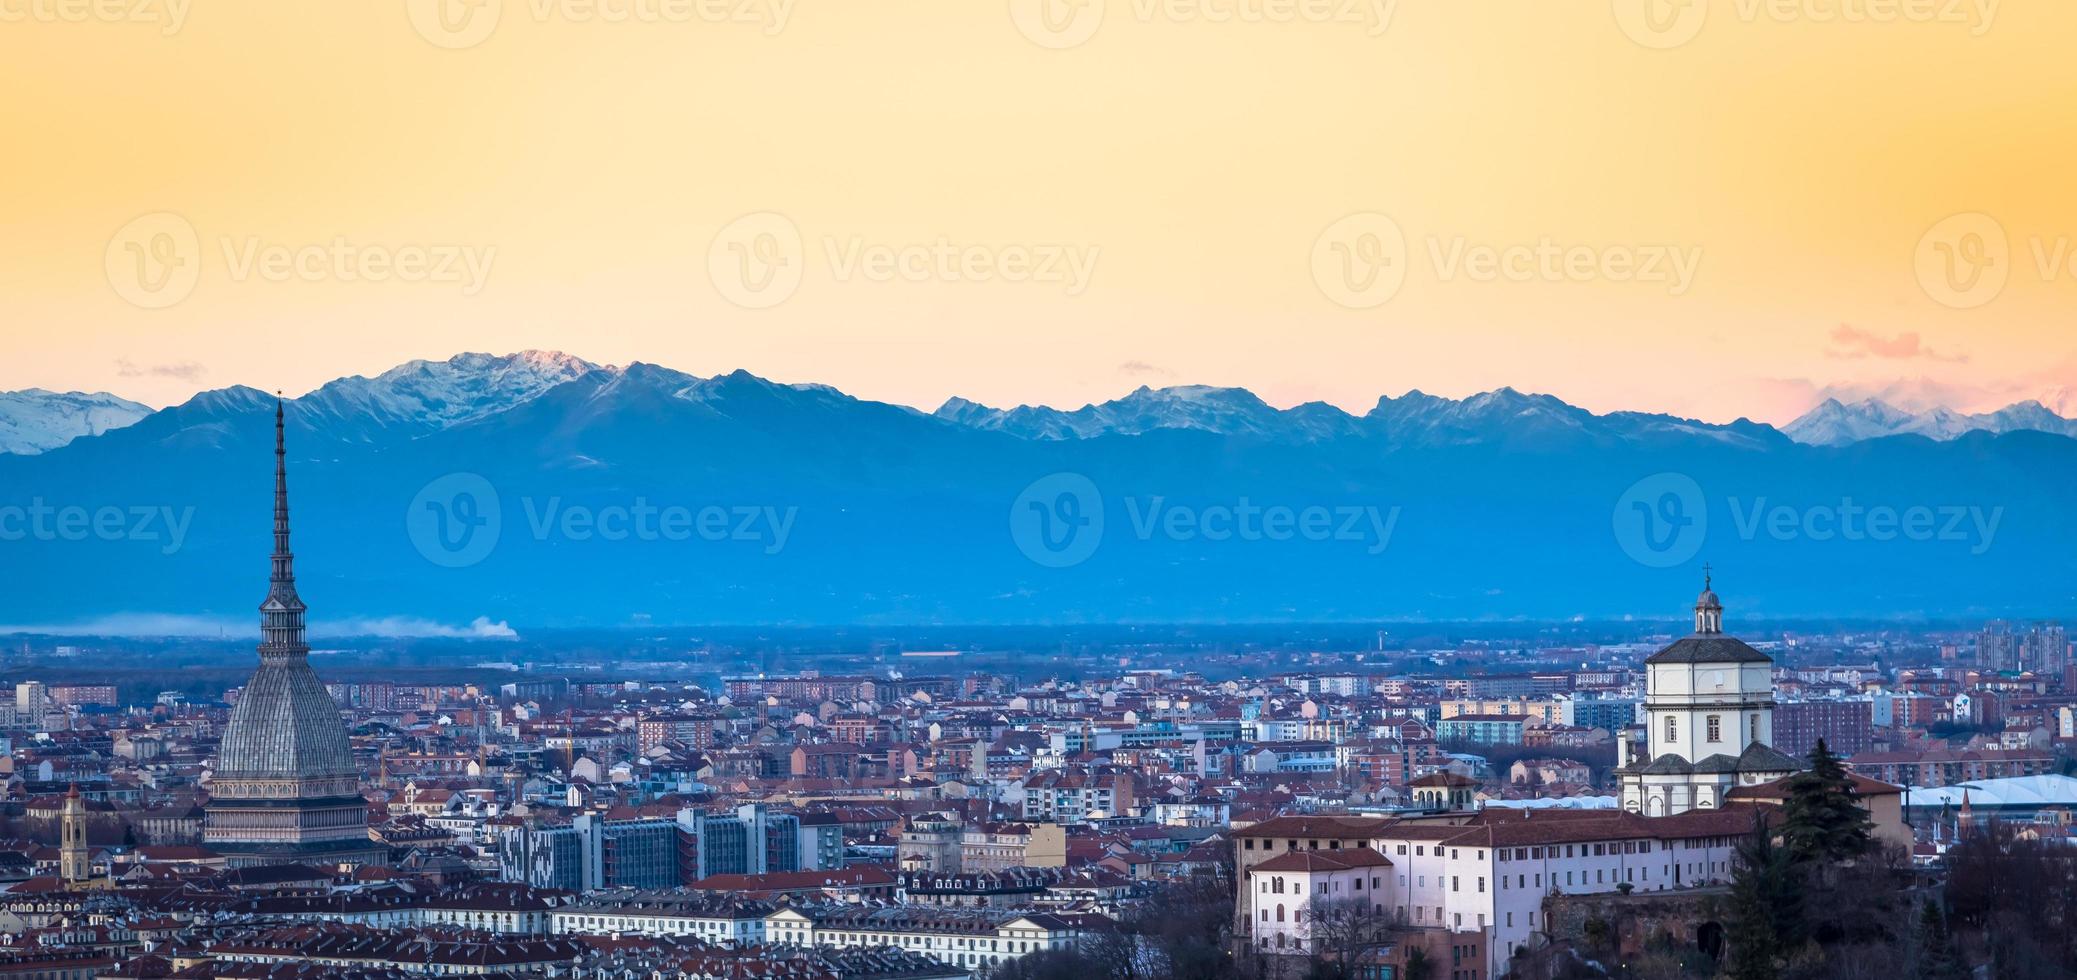 Horizonte panorámico de Turín al atardecer con los Alpes en segundo plano. foto